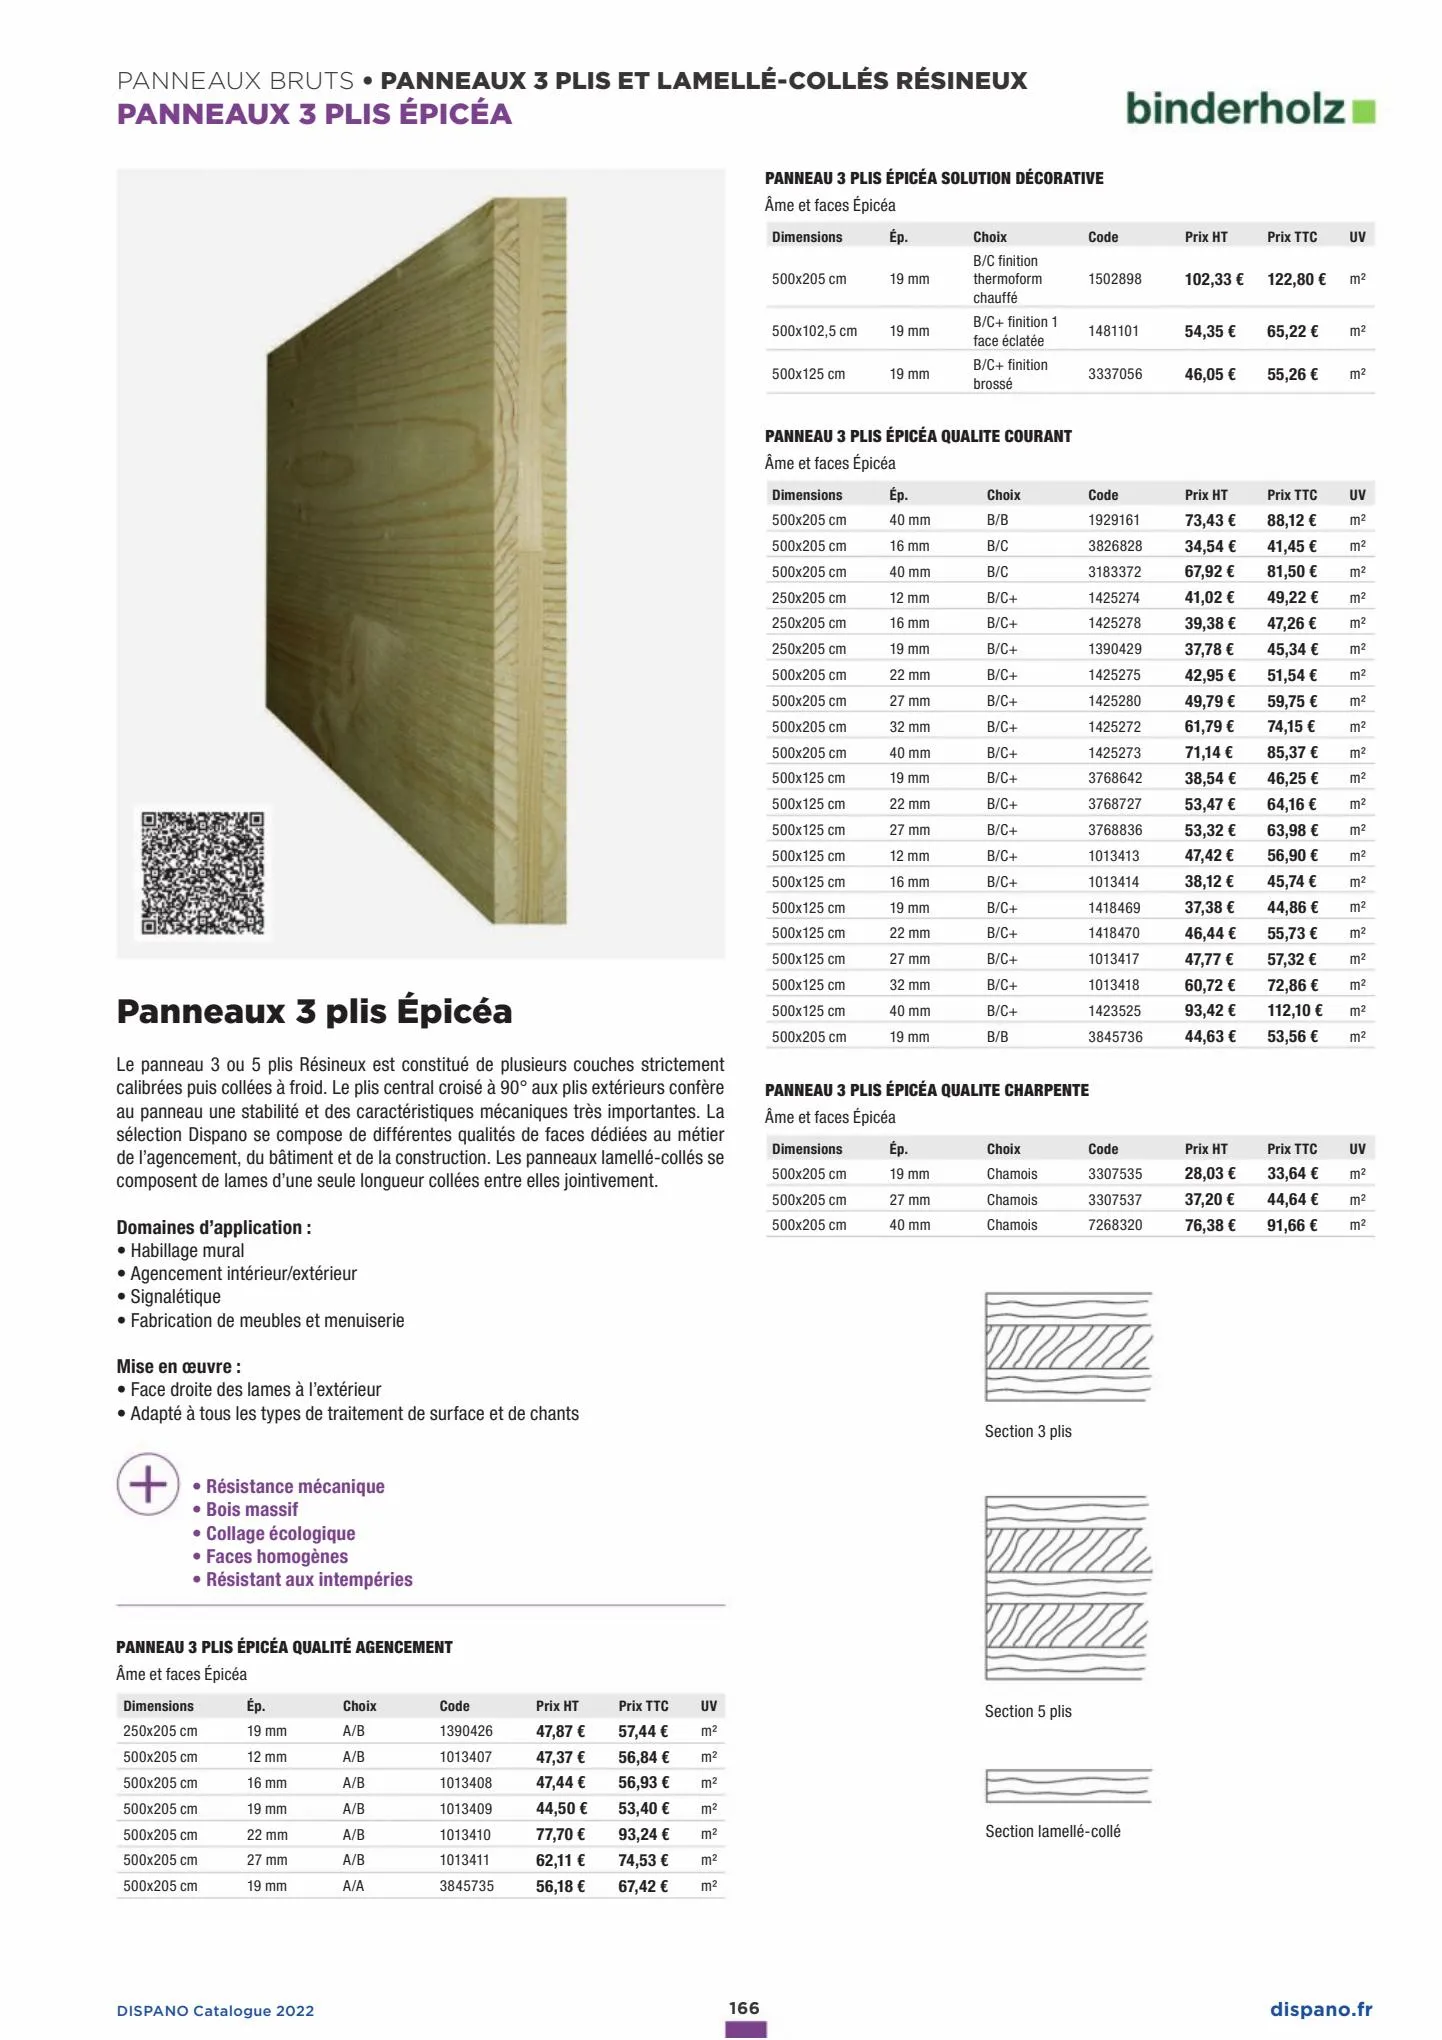 Catalogue Catalogue Dispano 2022, page 00166